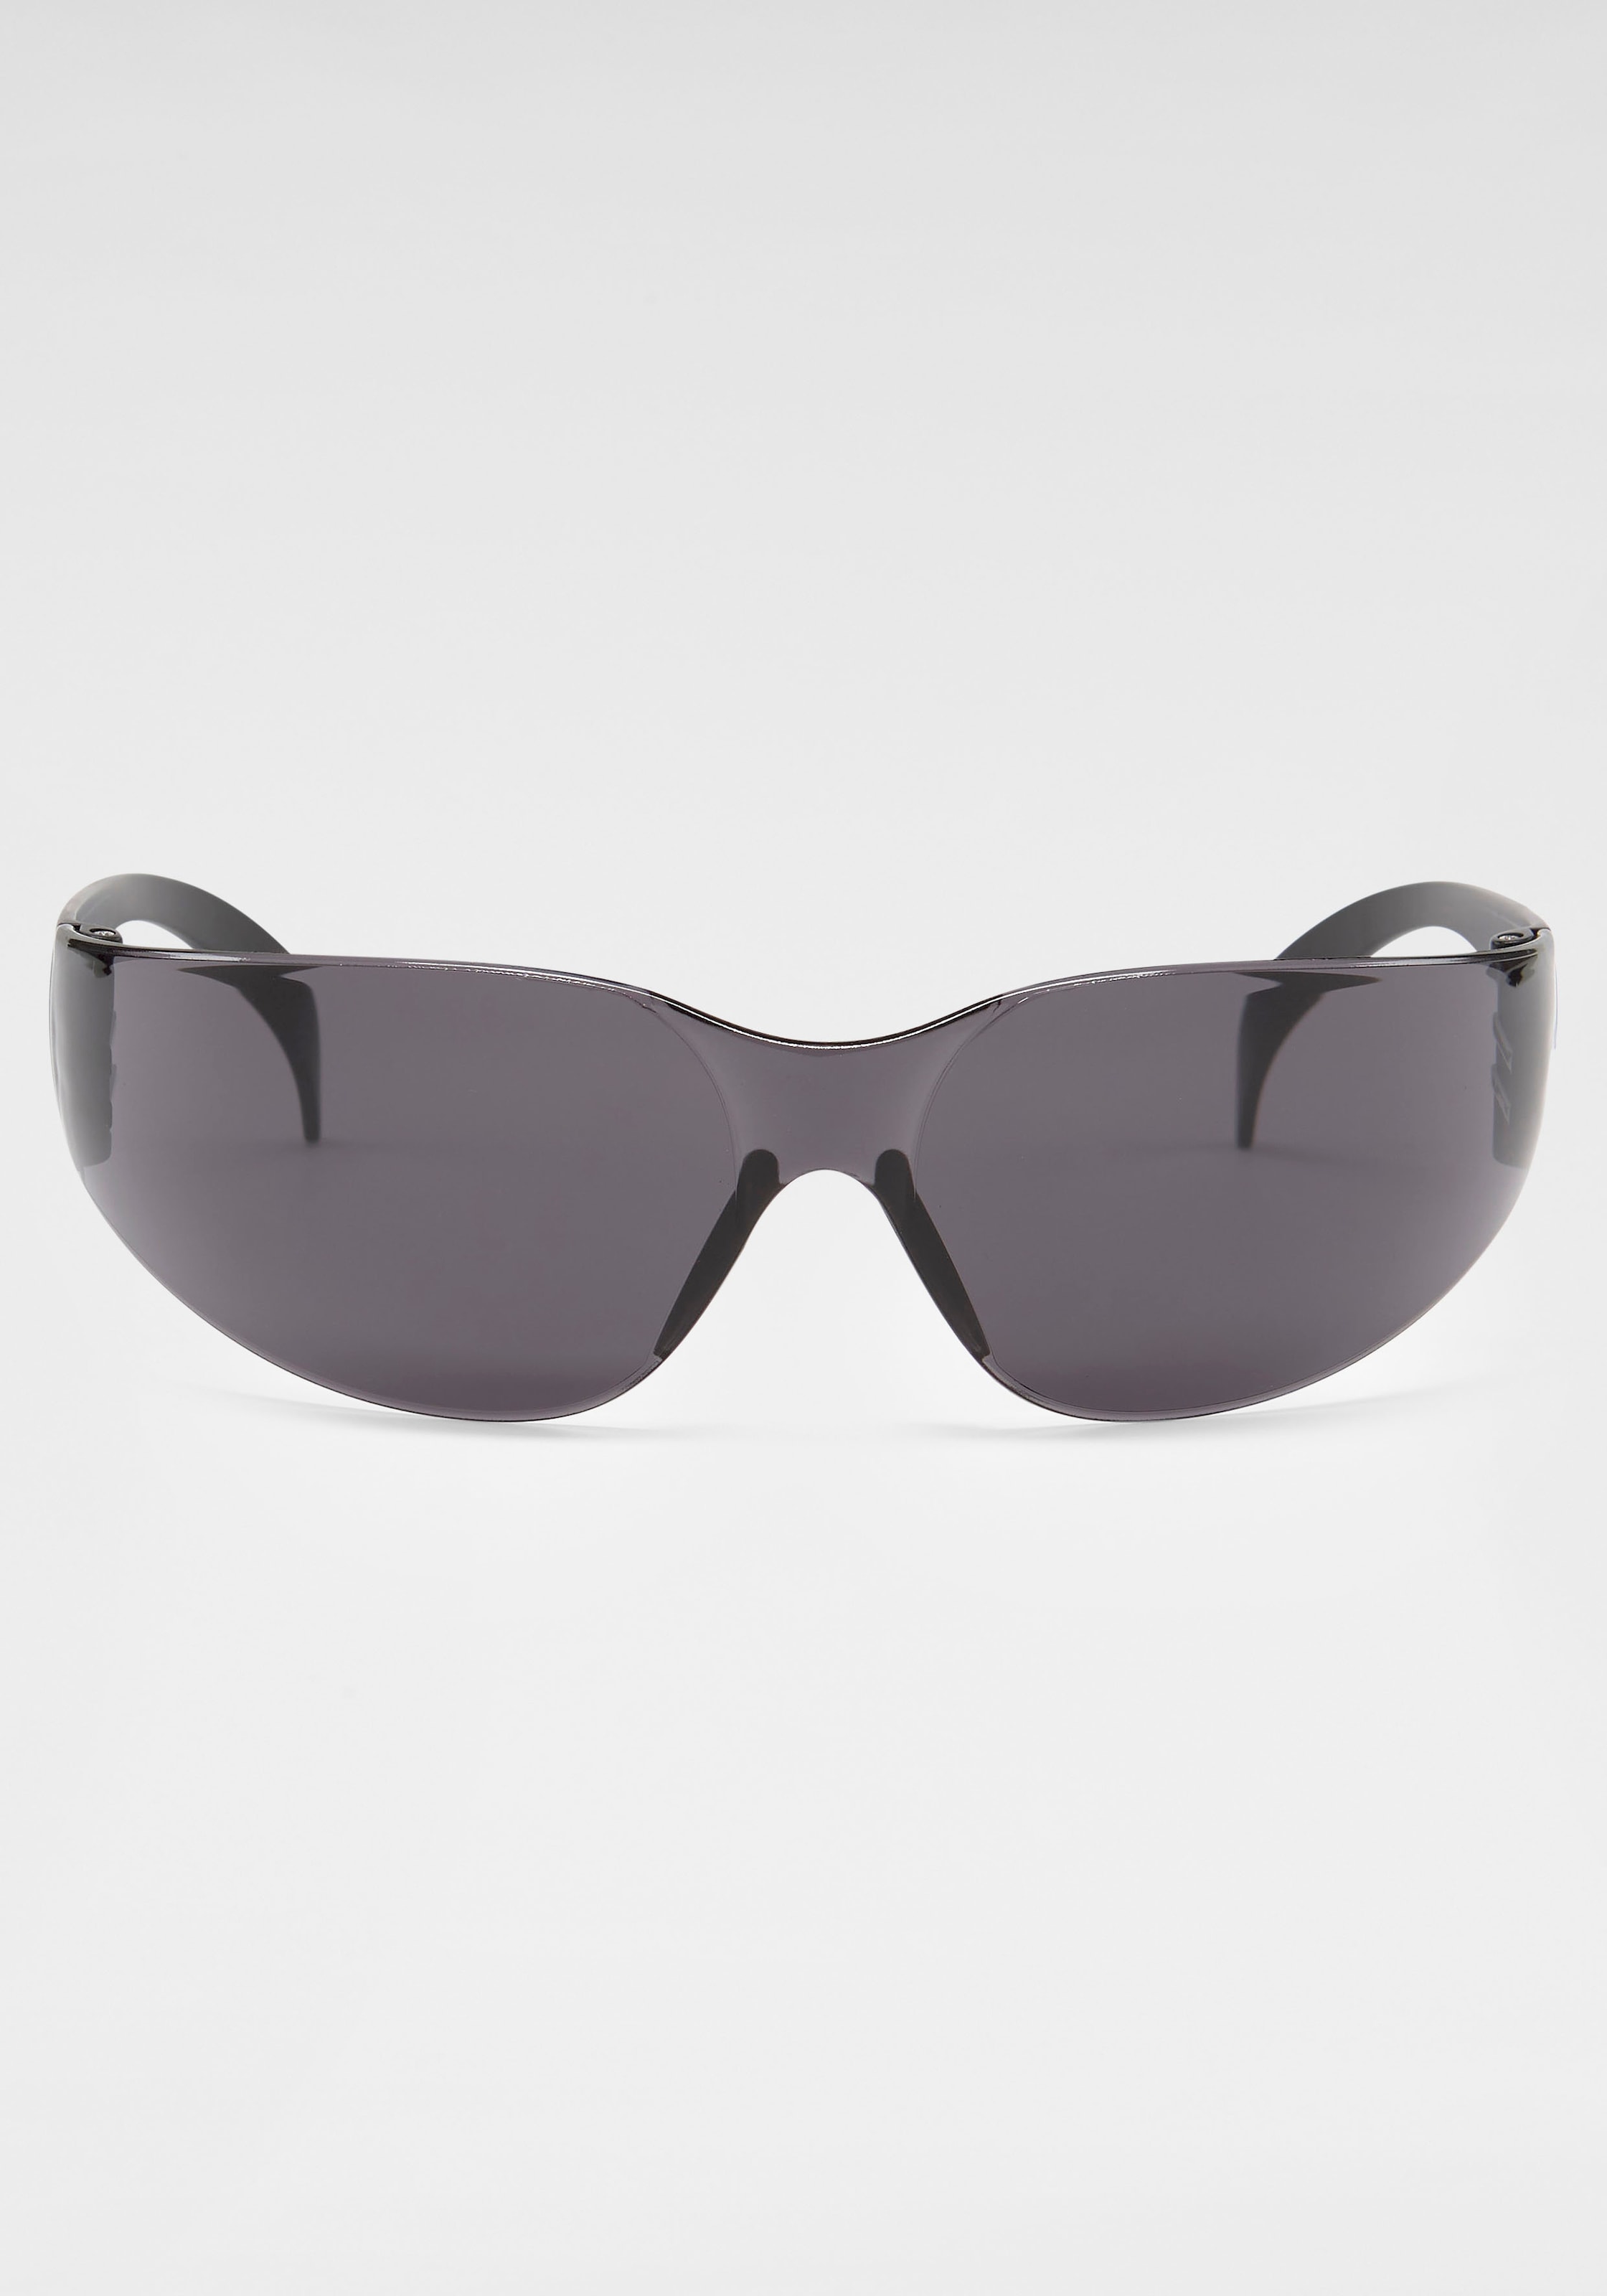 verspiegelten kaufen Gläsern online Bench. mit Sonnenbrille,